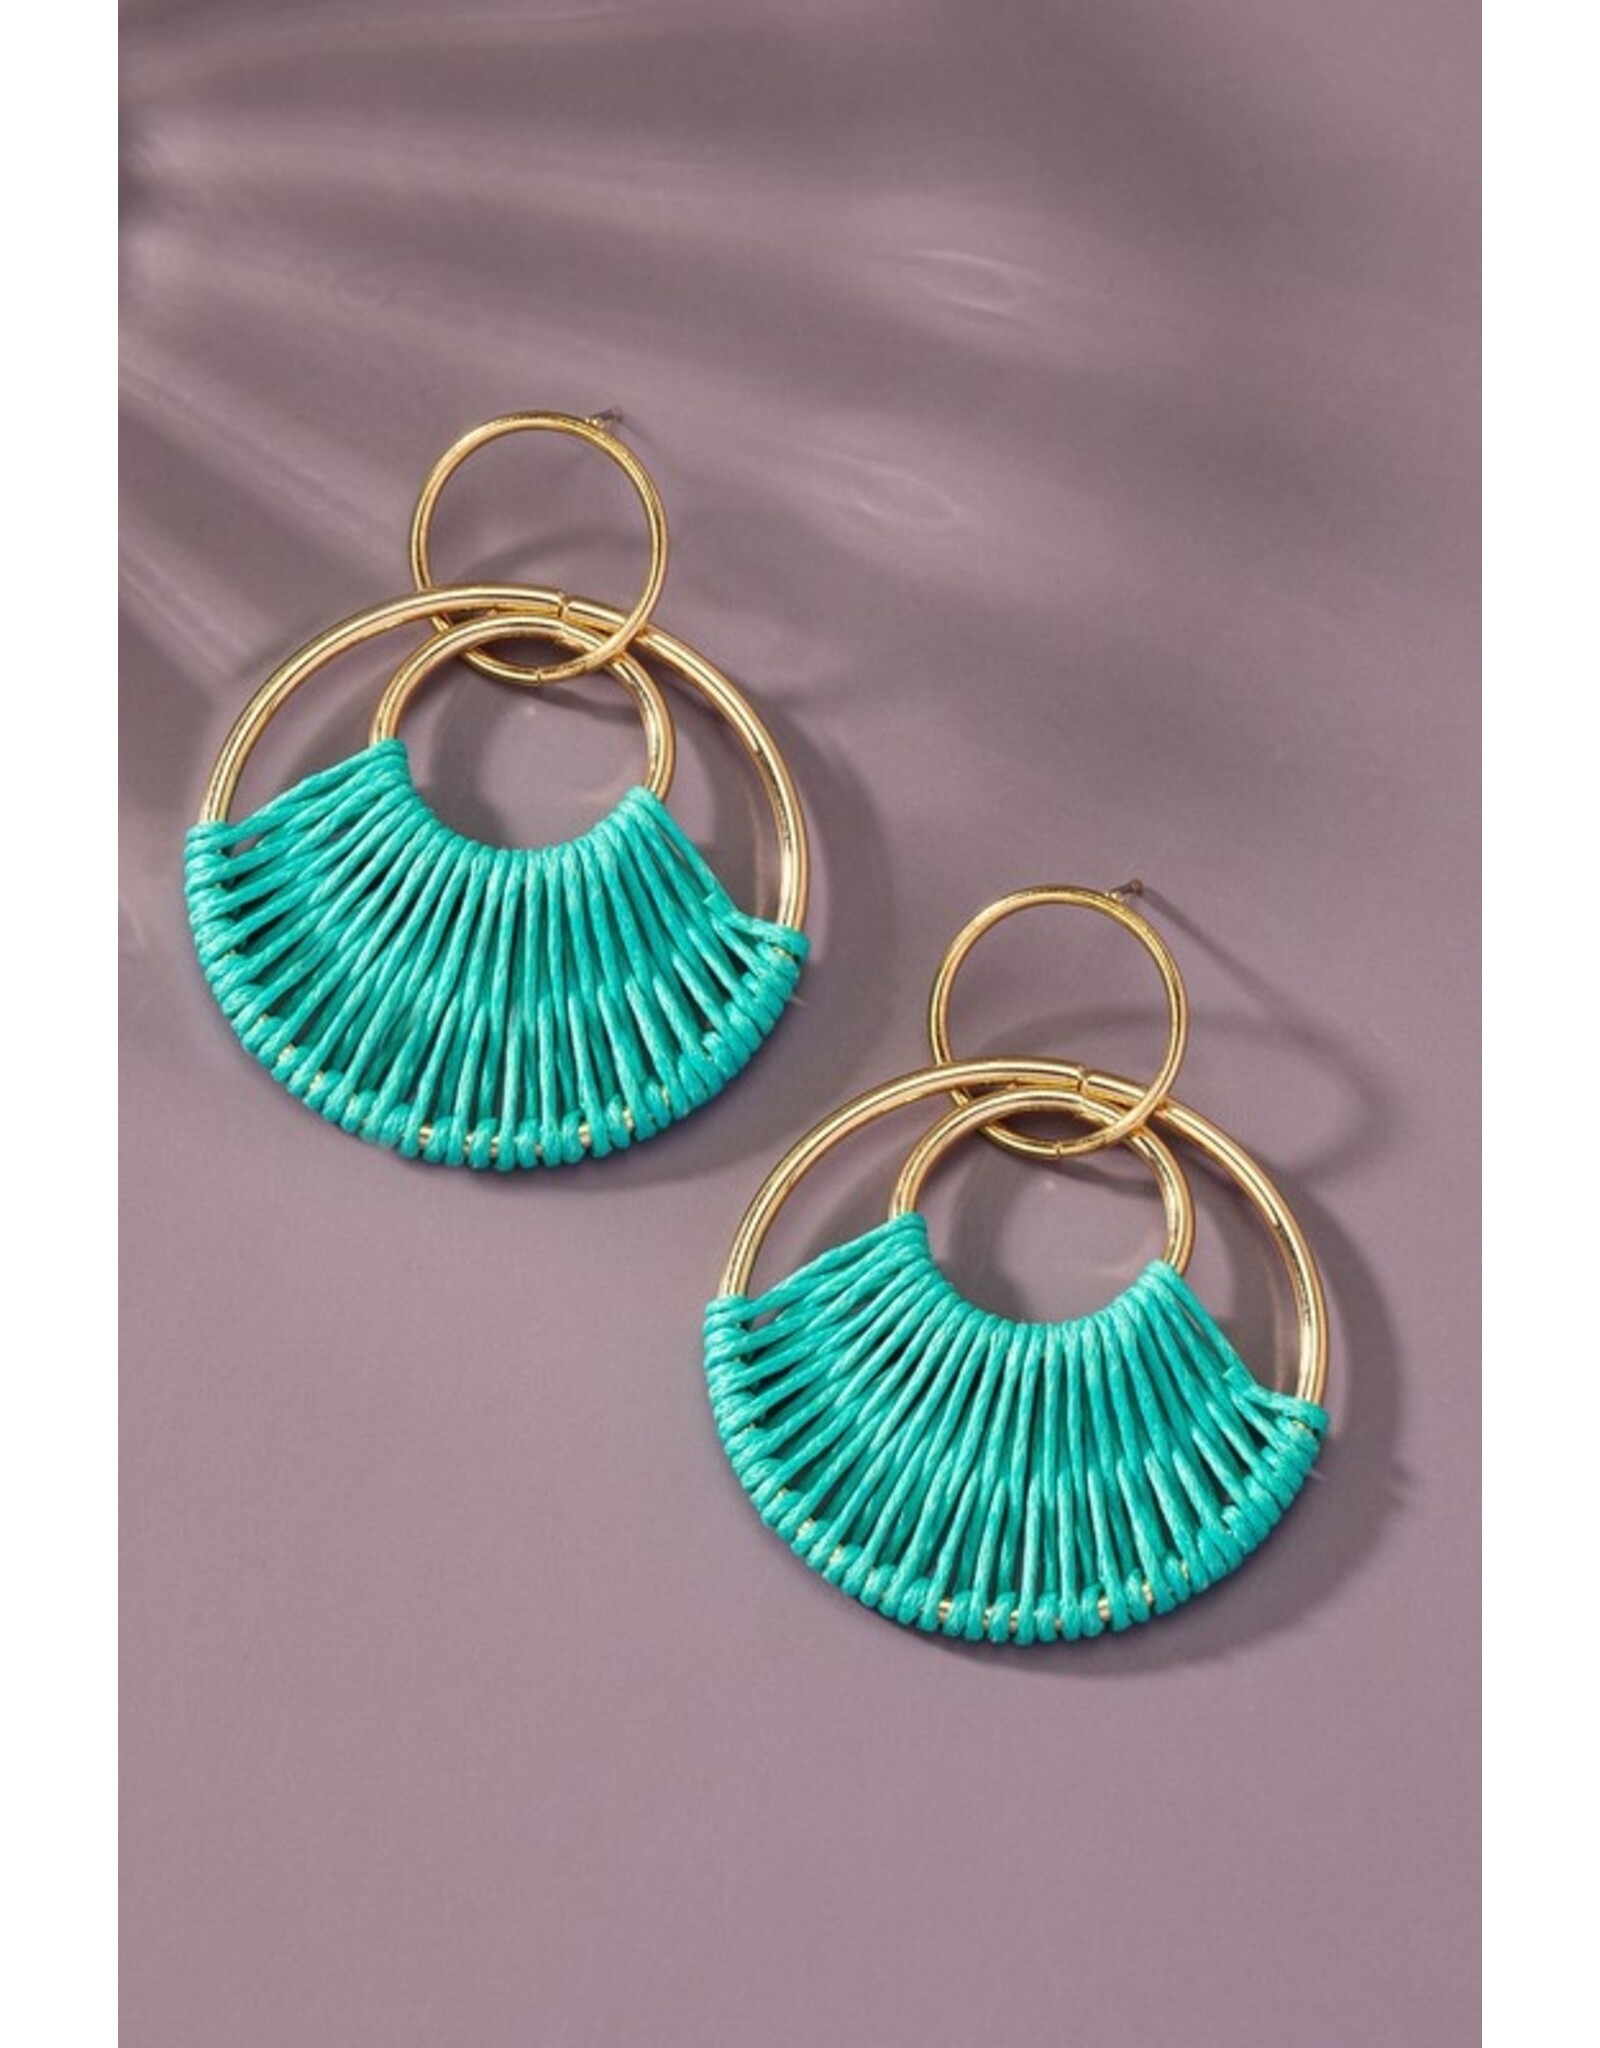 Turquoise Cord Hoop Earrings